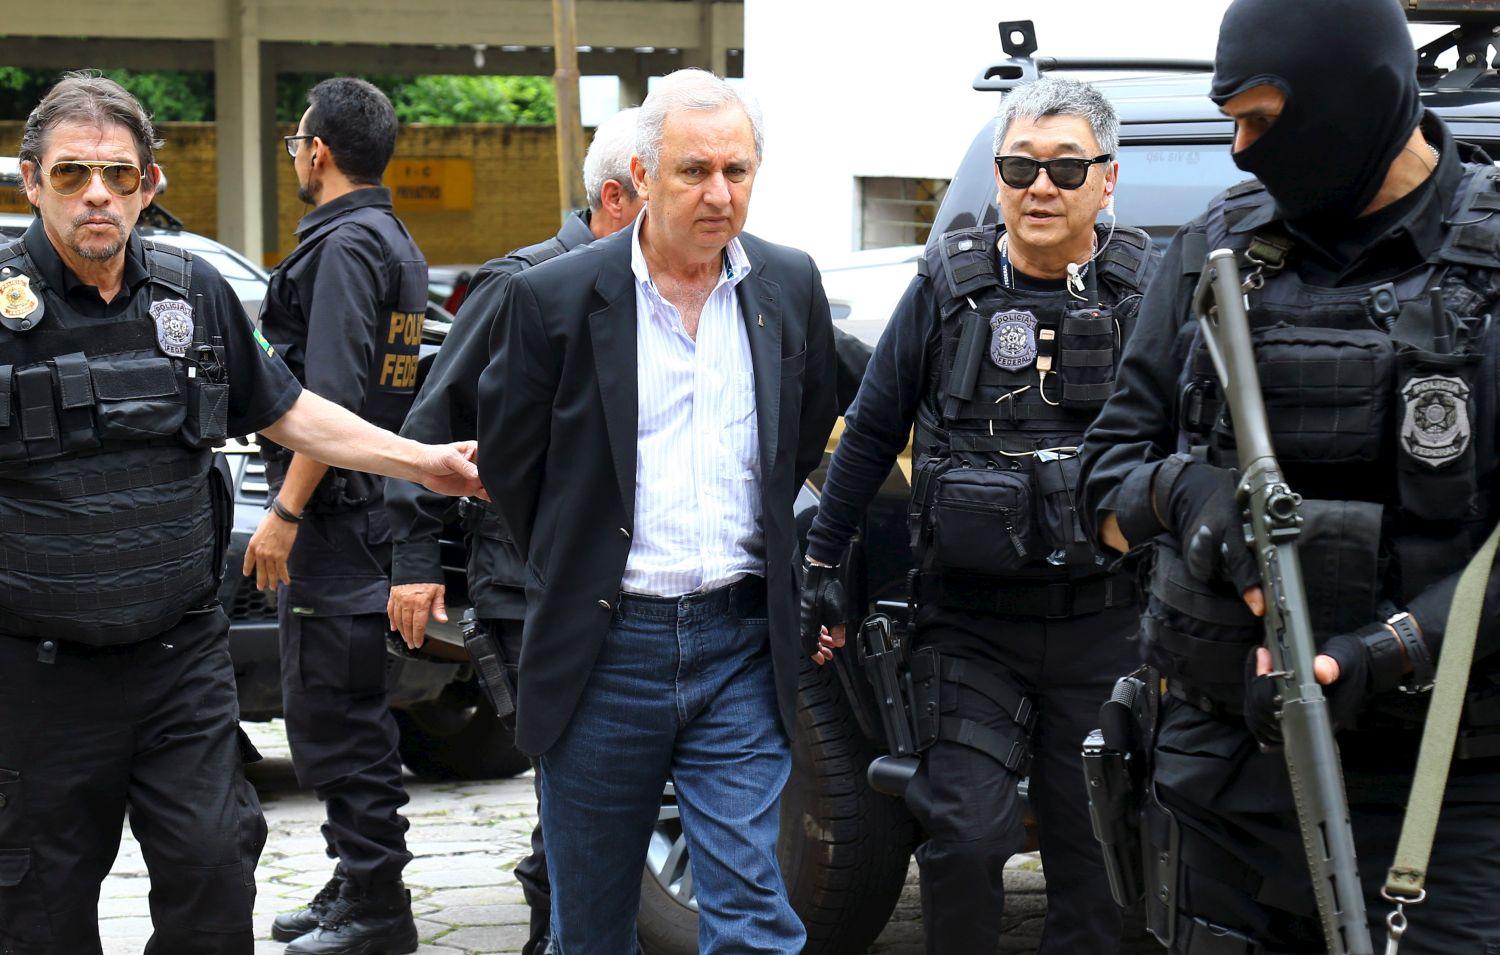 Jose Carlos Bumlai vállalkozót, Luiz Inacio Lula da Silva volt államfő közeli barátját is a Petrobras korrupciós botrány kapcsán tartóztatták le novemberben